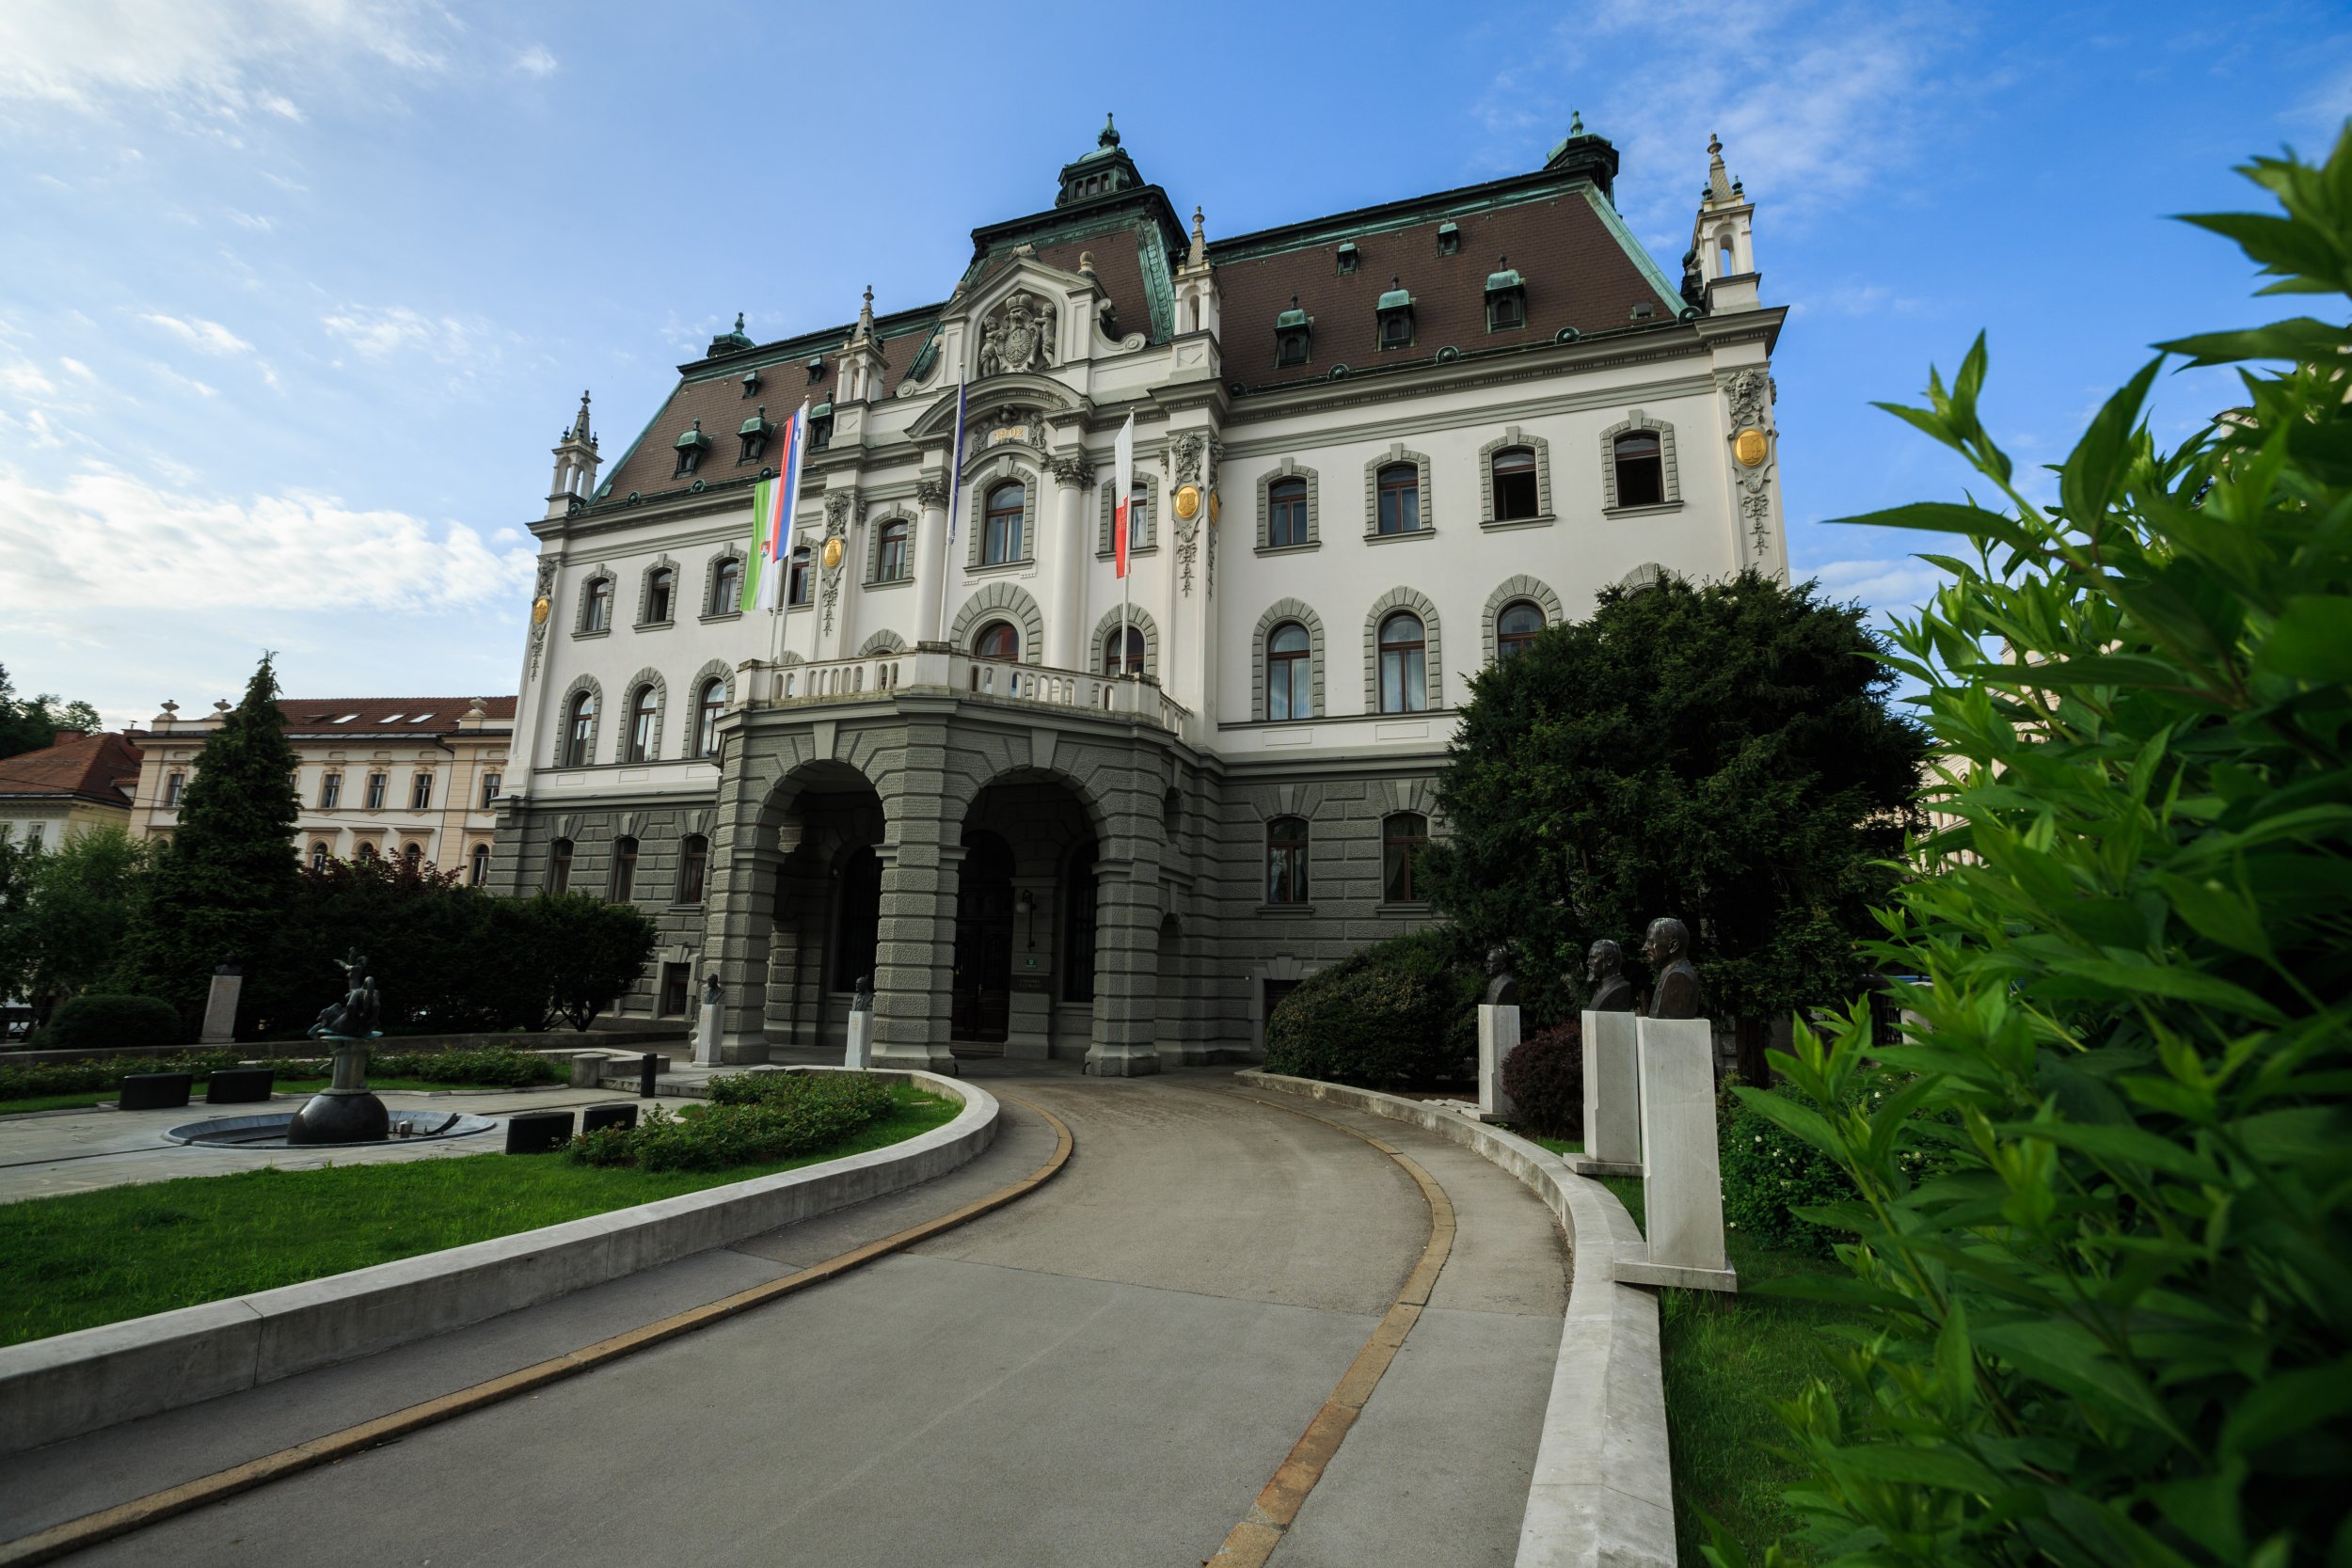 Univerza v Ljubljani/University of Ljubljana